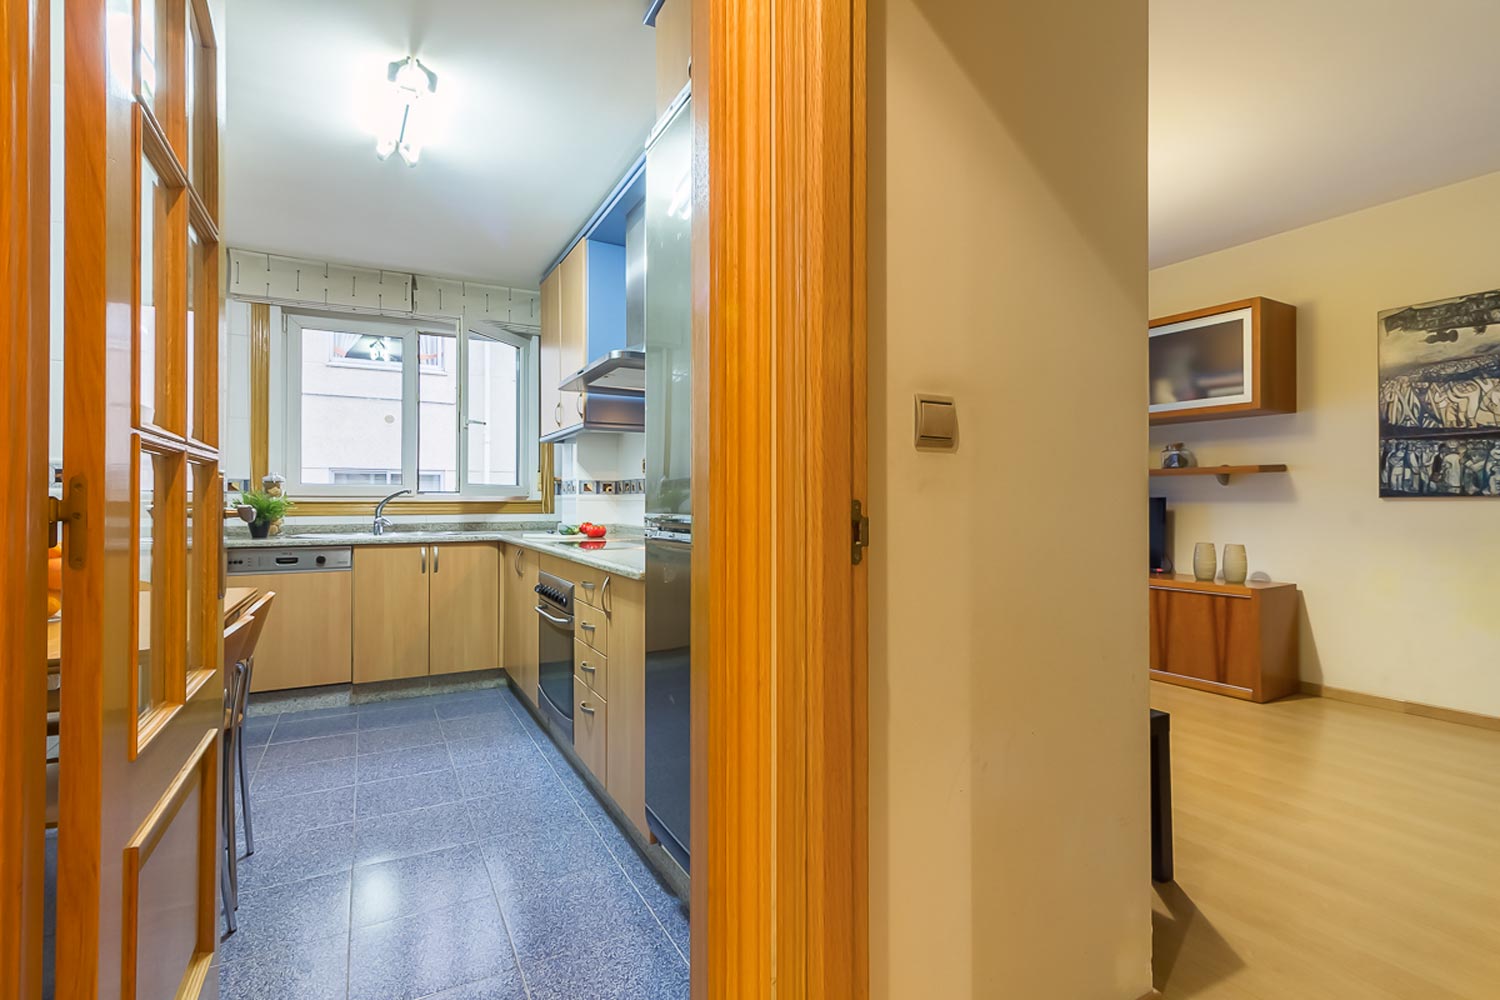 Cocina con suelo de azulejo azul y frontales de madera clara_ conexión con salón_home staging